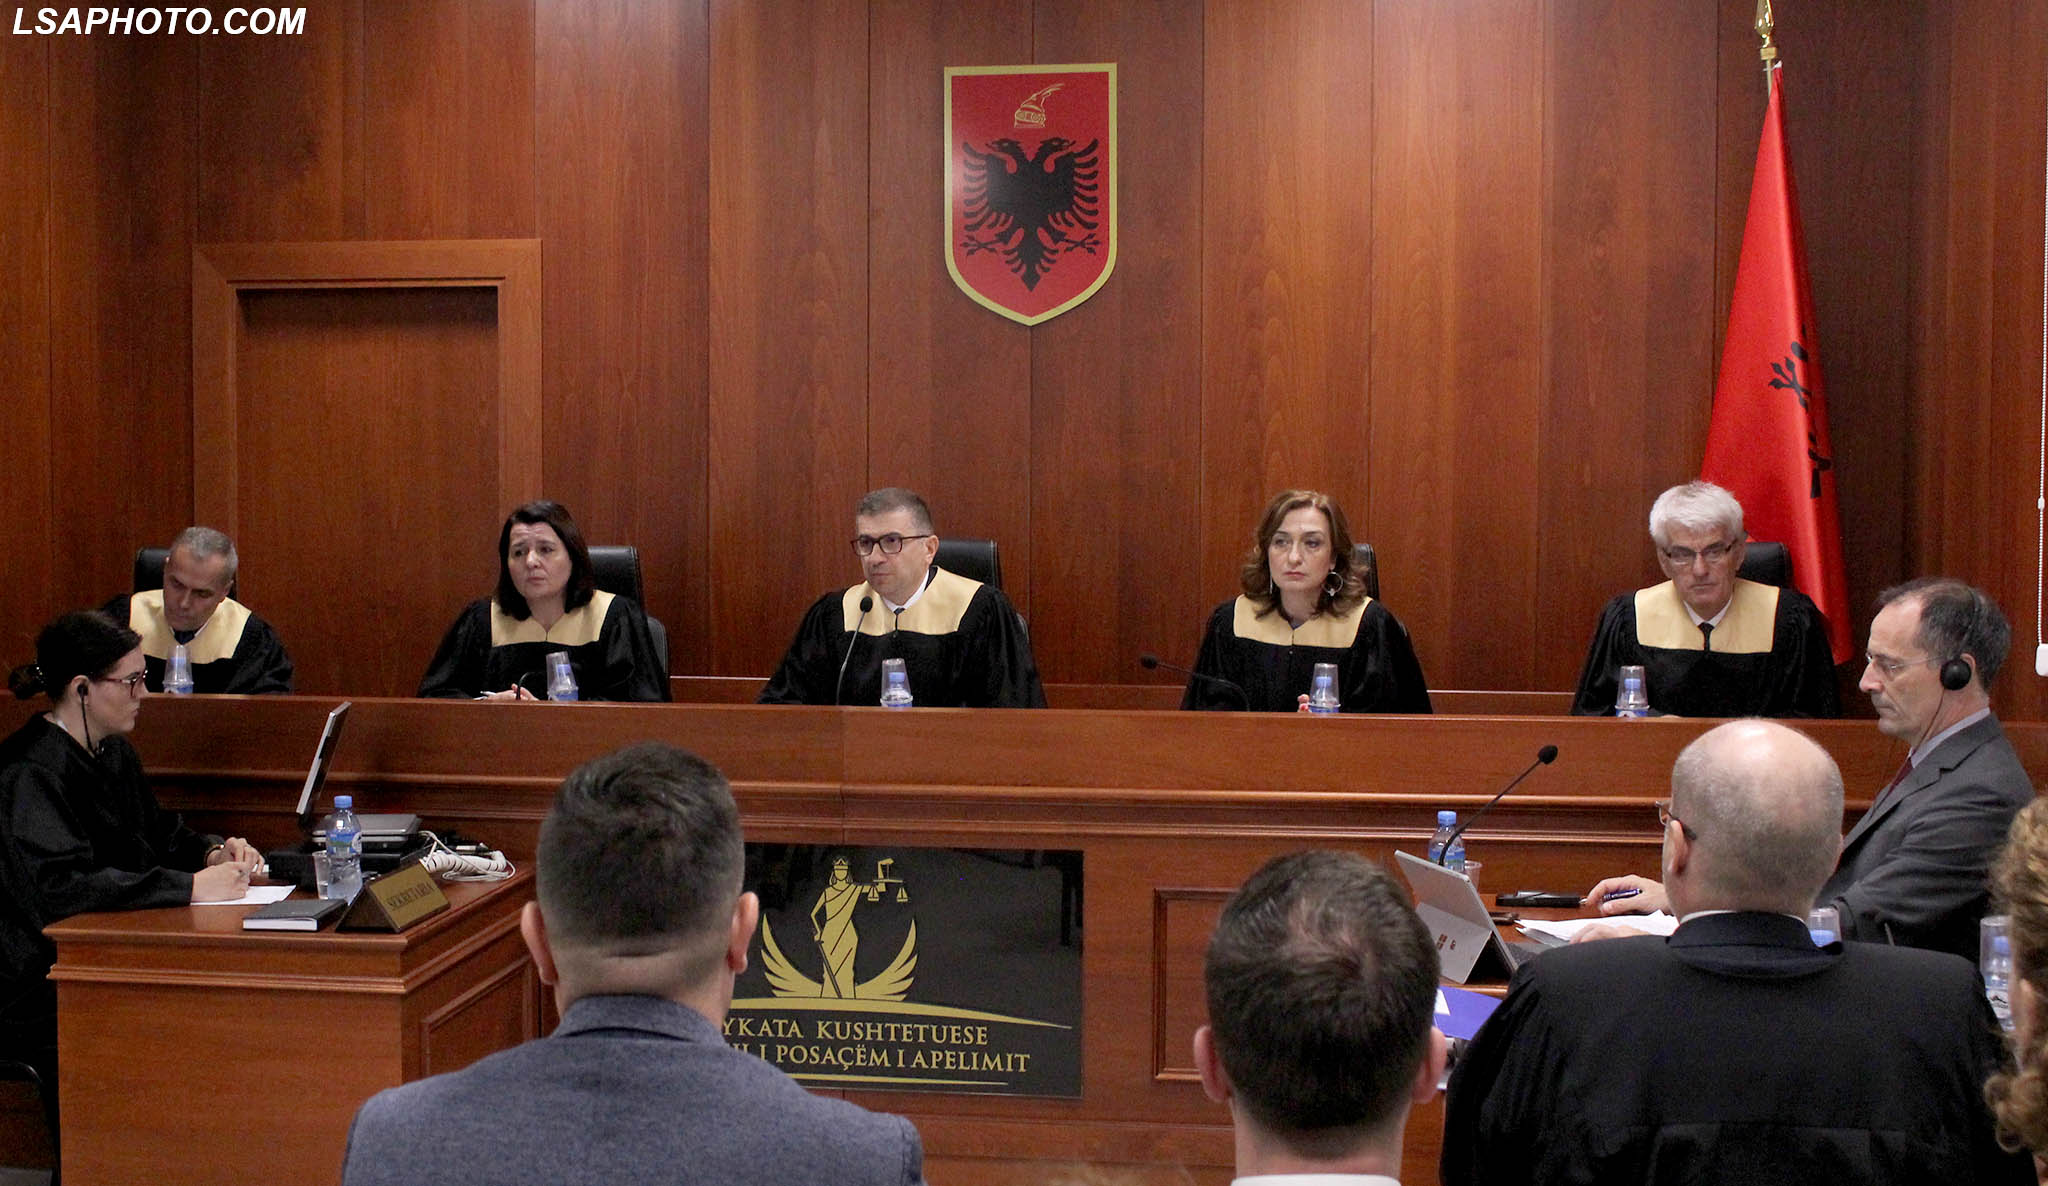 Seanca në KPA, relatorja Natasha Mulaj përplaset me gjyqtaren Kosova